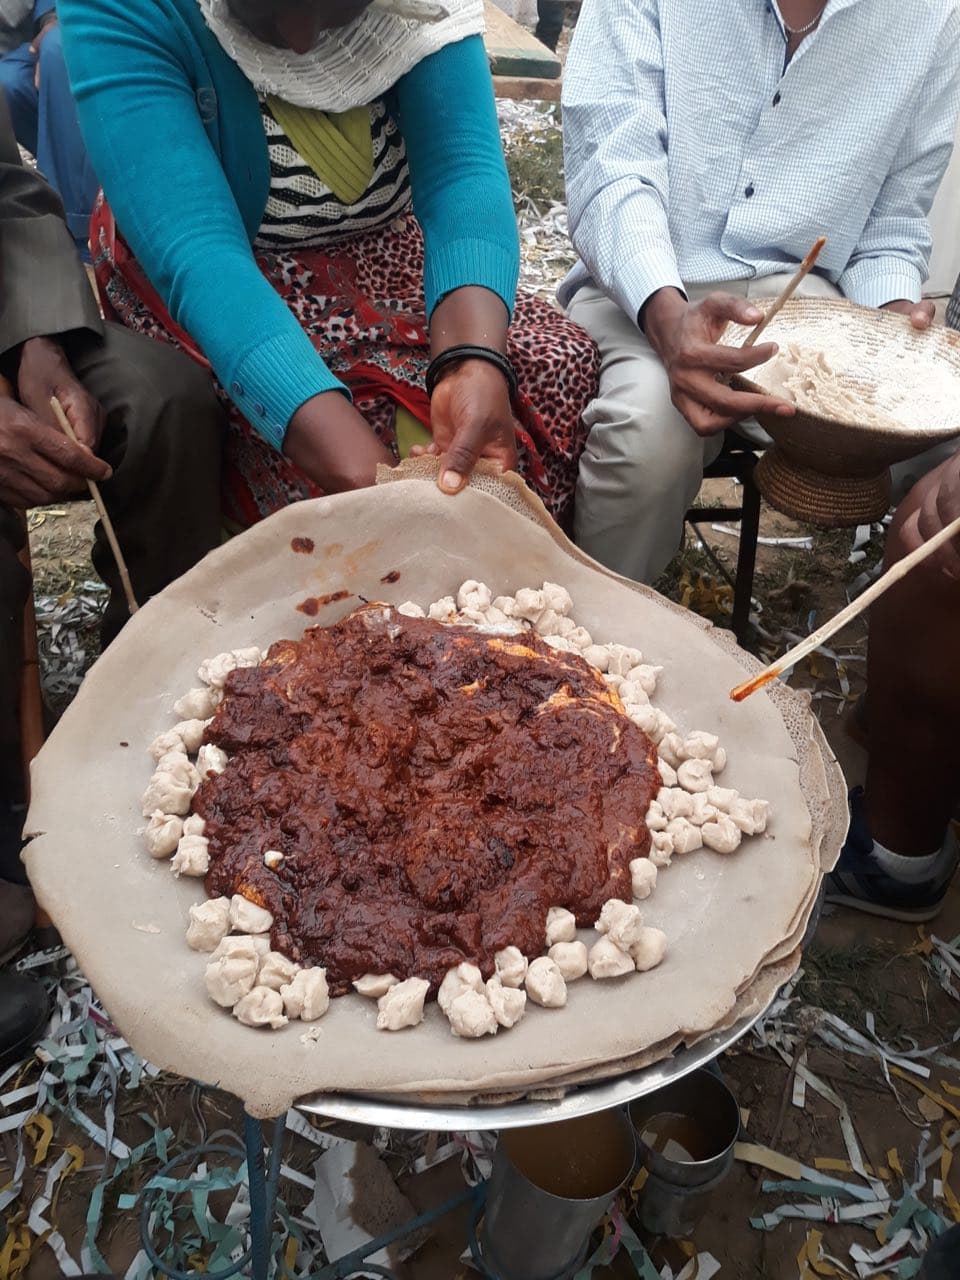 tihlo, Ethiopian dish